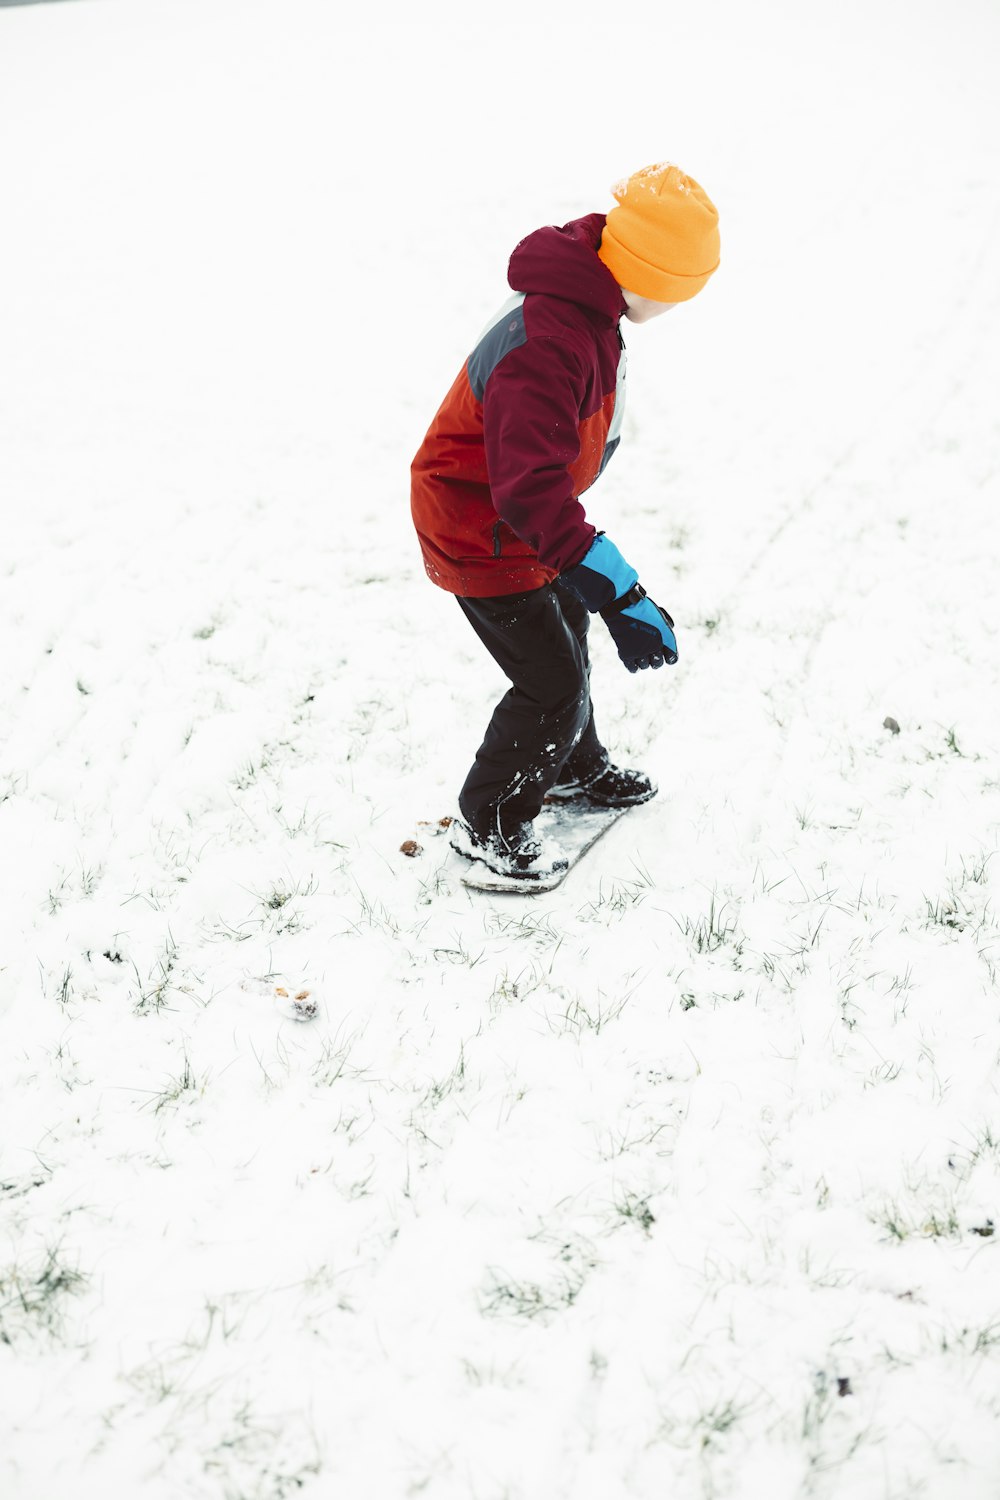 Un niño montando una tabla de snowboard por una pendiente cubierta de nieve